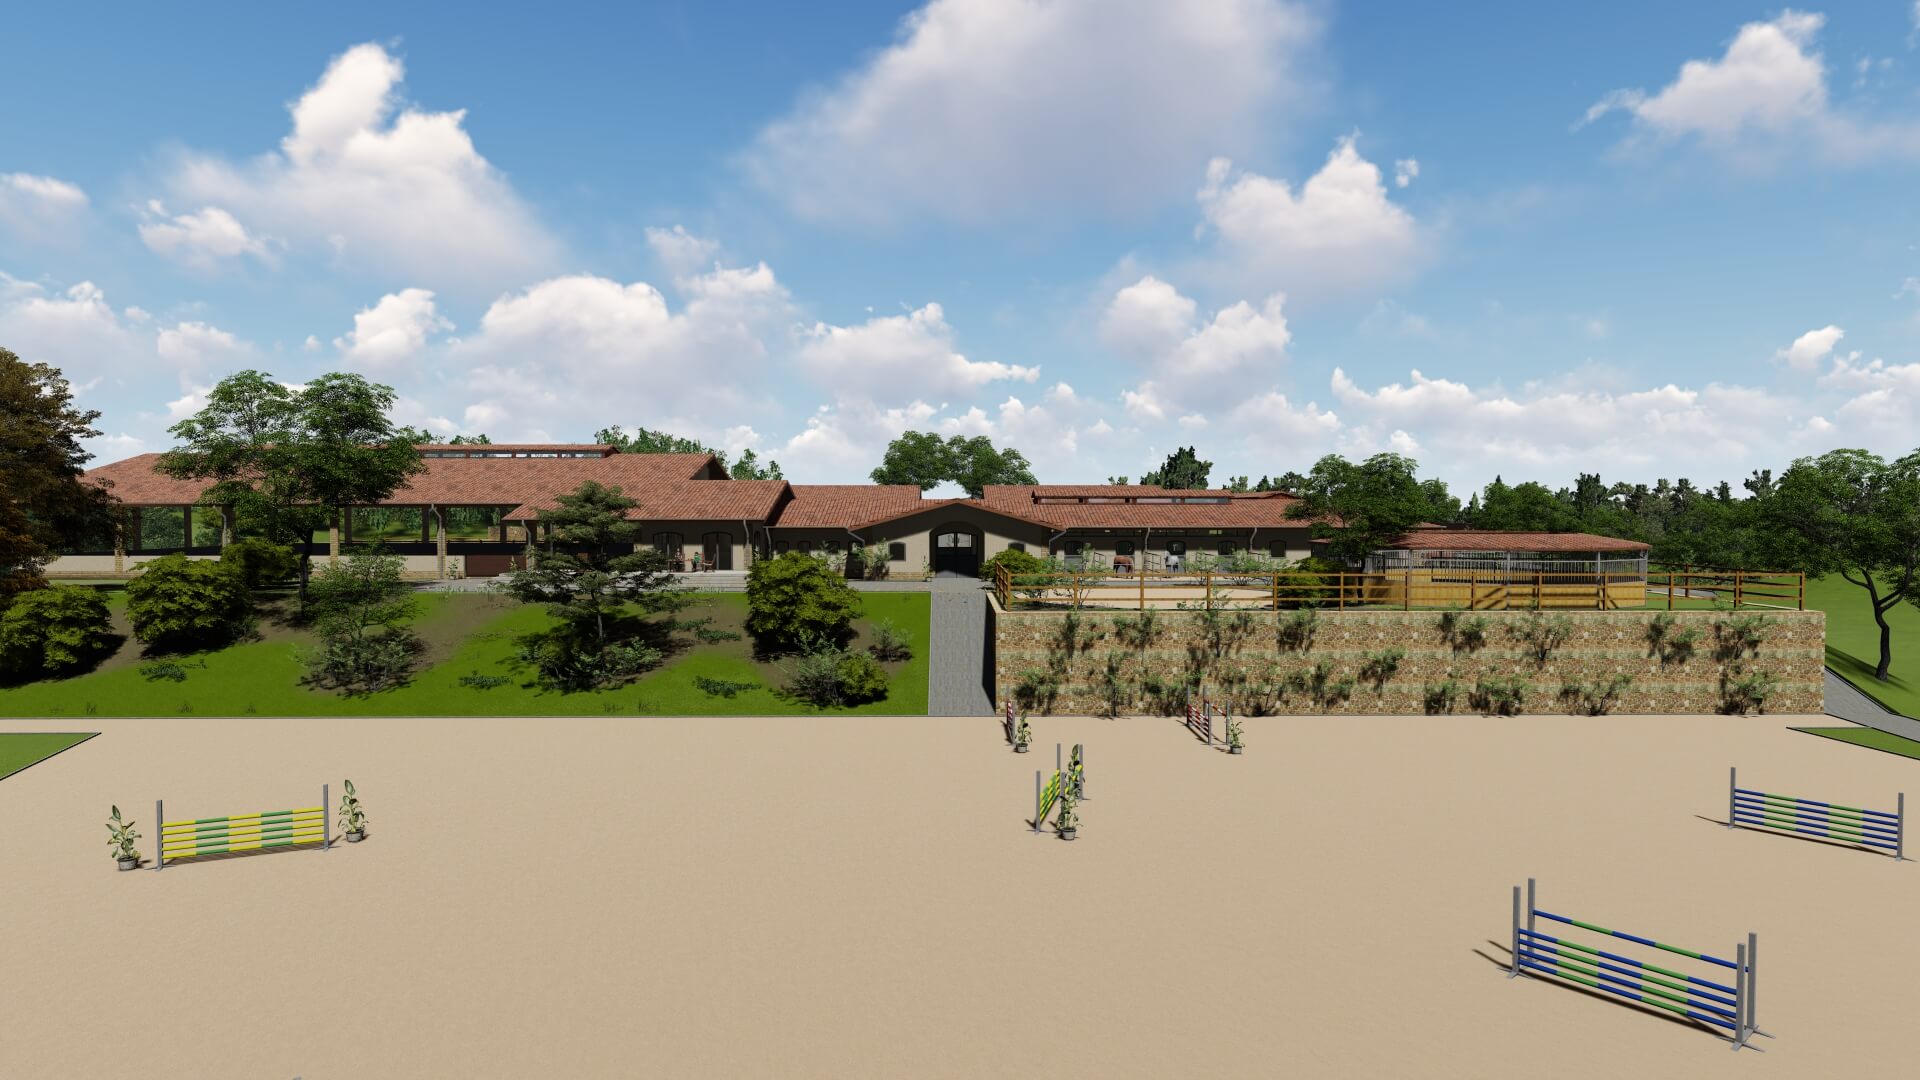 Visualisierung eines weitläufigen Reitgeländes von EQUUS DESIGN PLANUNG mit Stallungen im Hintergrund, eingebettet in eine natürliche Landschaft, betont durch Springhindernisse auf einem Sandplatz.